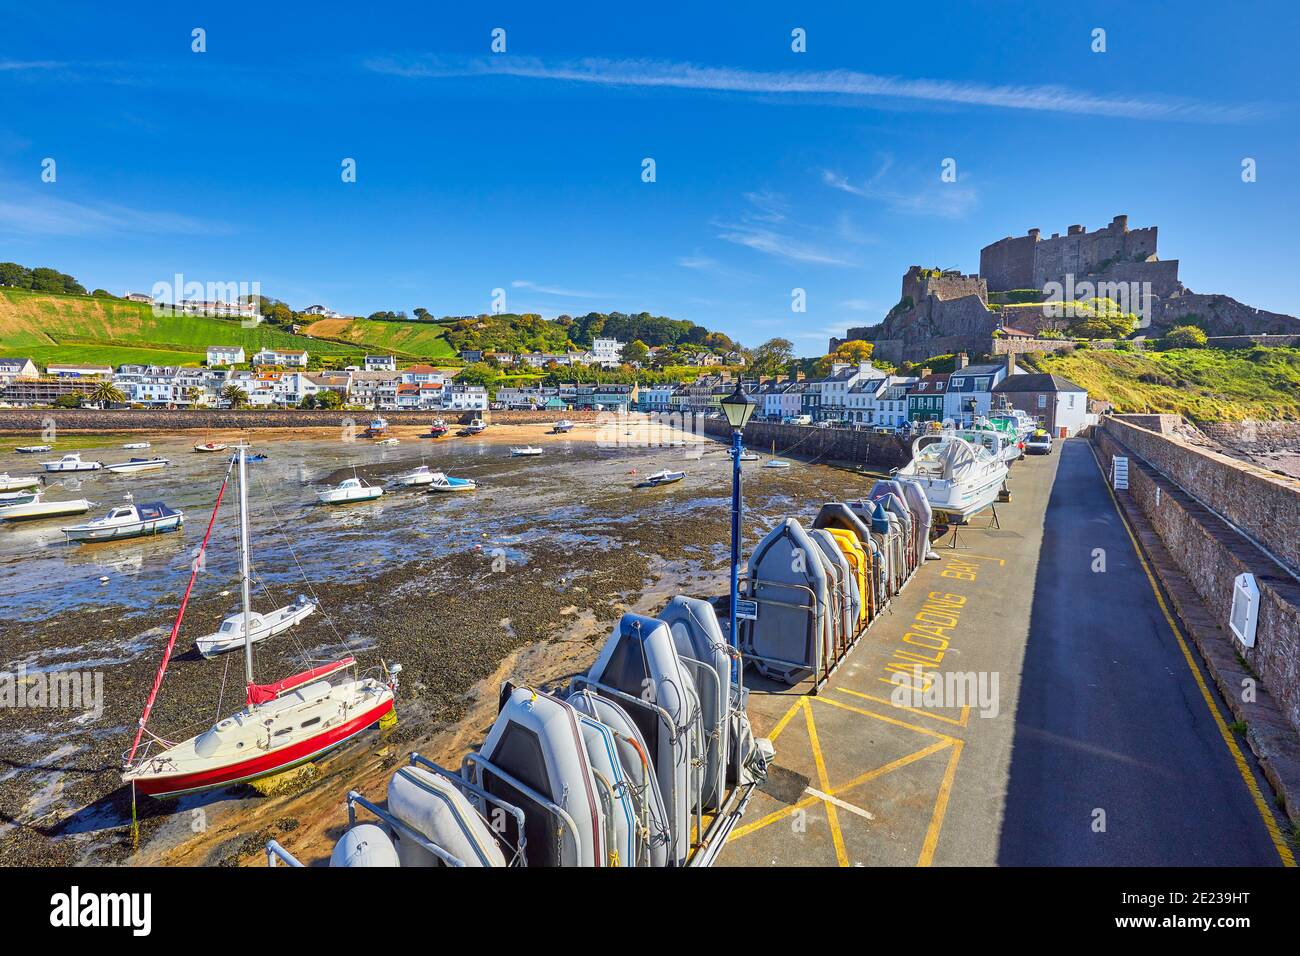 Immagine del porto di Gorey a bassa marea con barche a terra, le corrida del molo e il castello di Gorey sullo sfondo con il cielo blu. Jersey, Isole del canale, Foto Stock